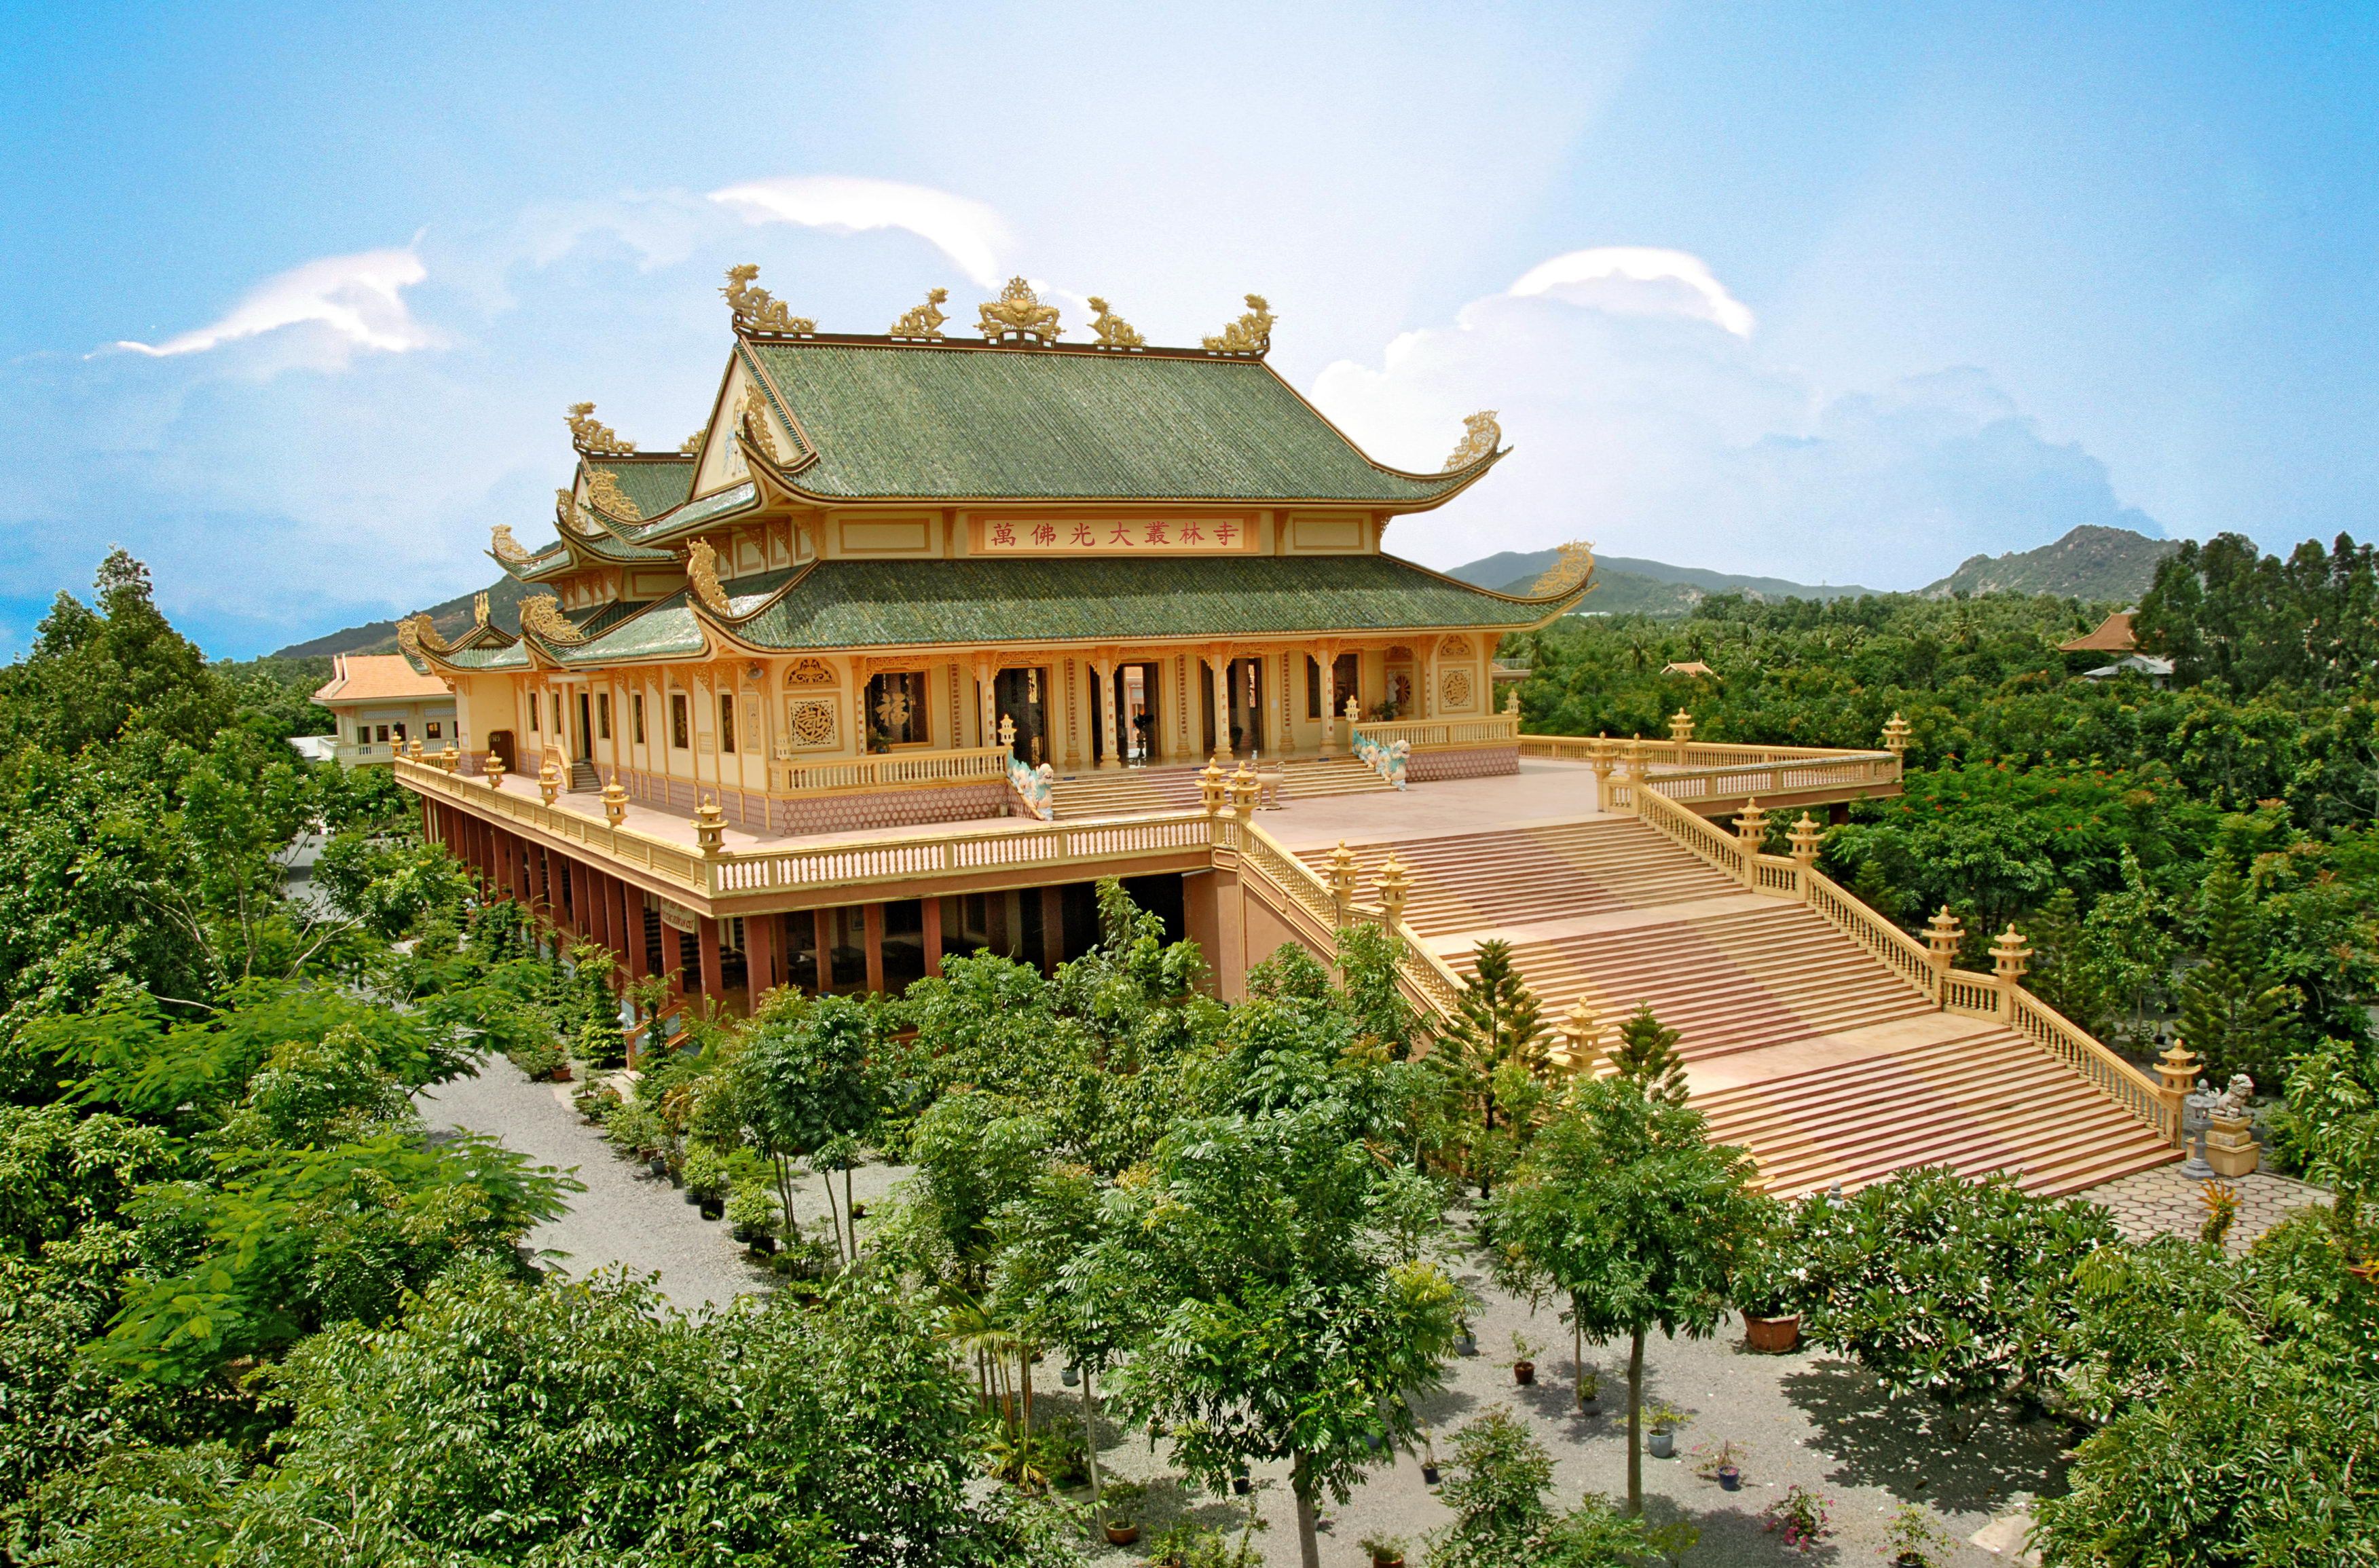 Đại Tòng Lâm Pagoda (Vũng Tàu province) The pagoda has been recognized ...